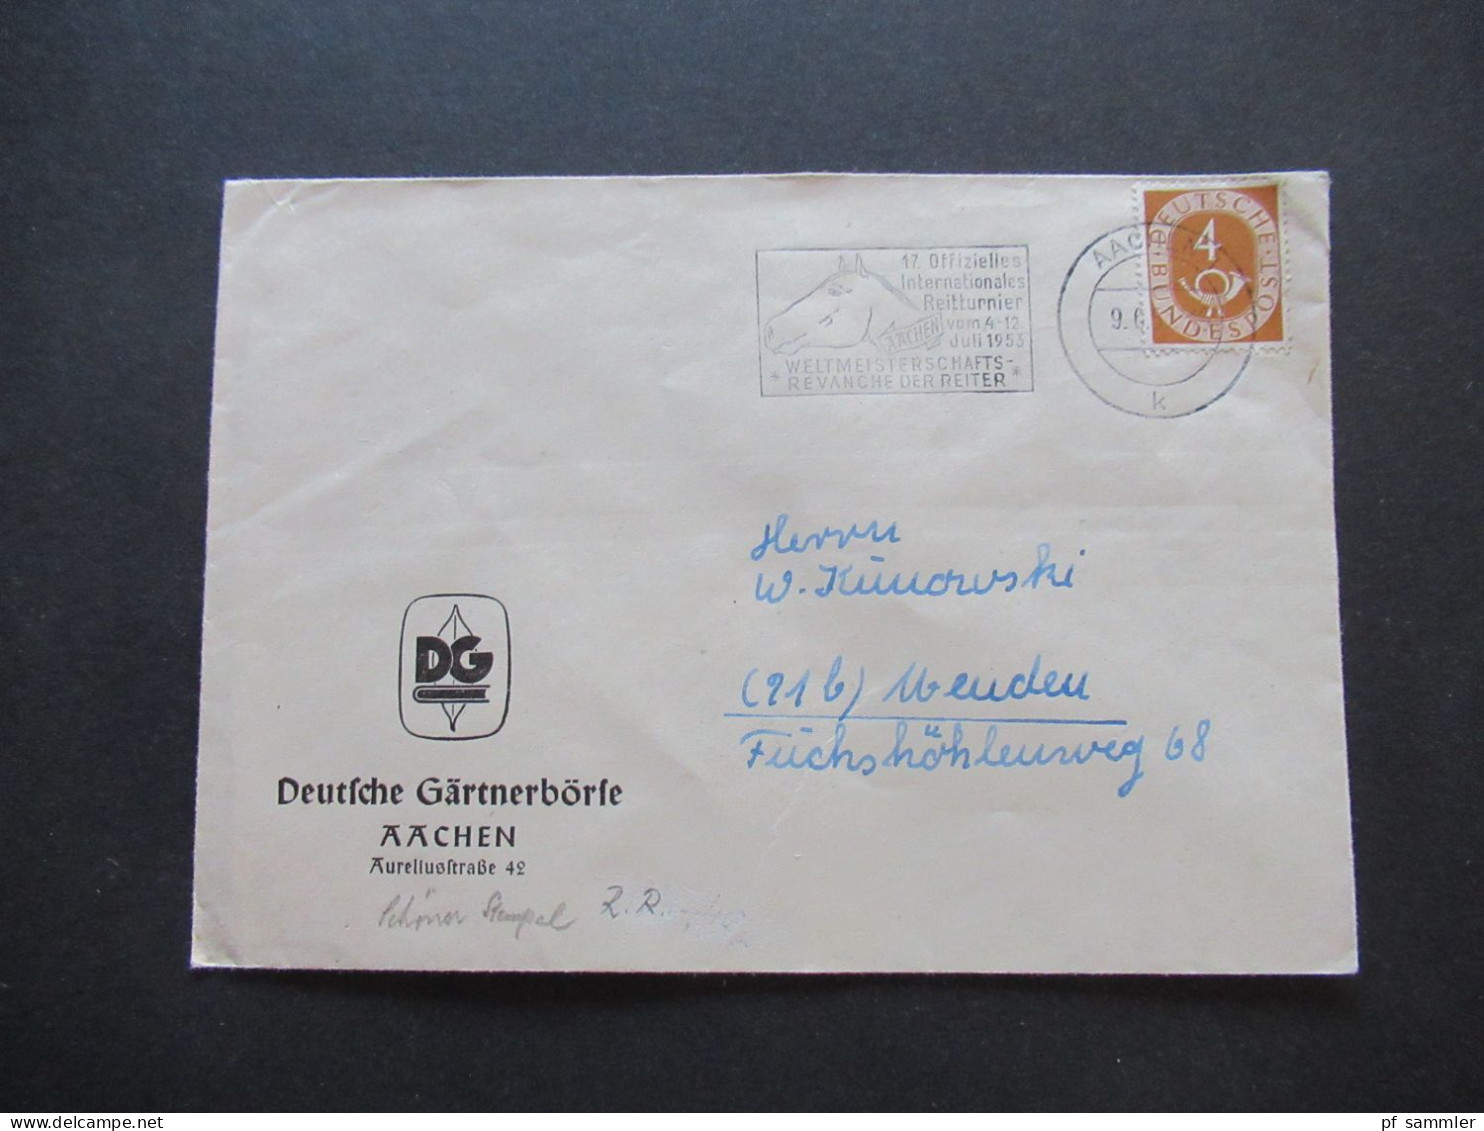 BRD 1951 Posthorn Nr.124 EF Mit MS Aachen 17. Offizielles Int. Reitturnier Weltmeisterschafts Revanche Der Reiter - Briefe U. Dokumente